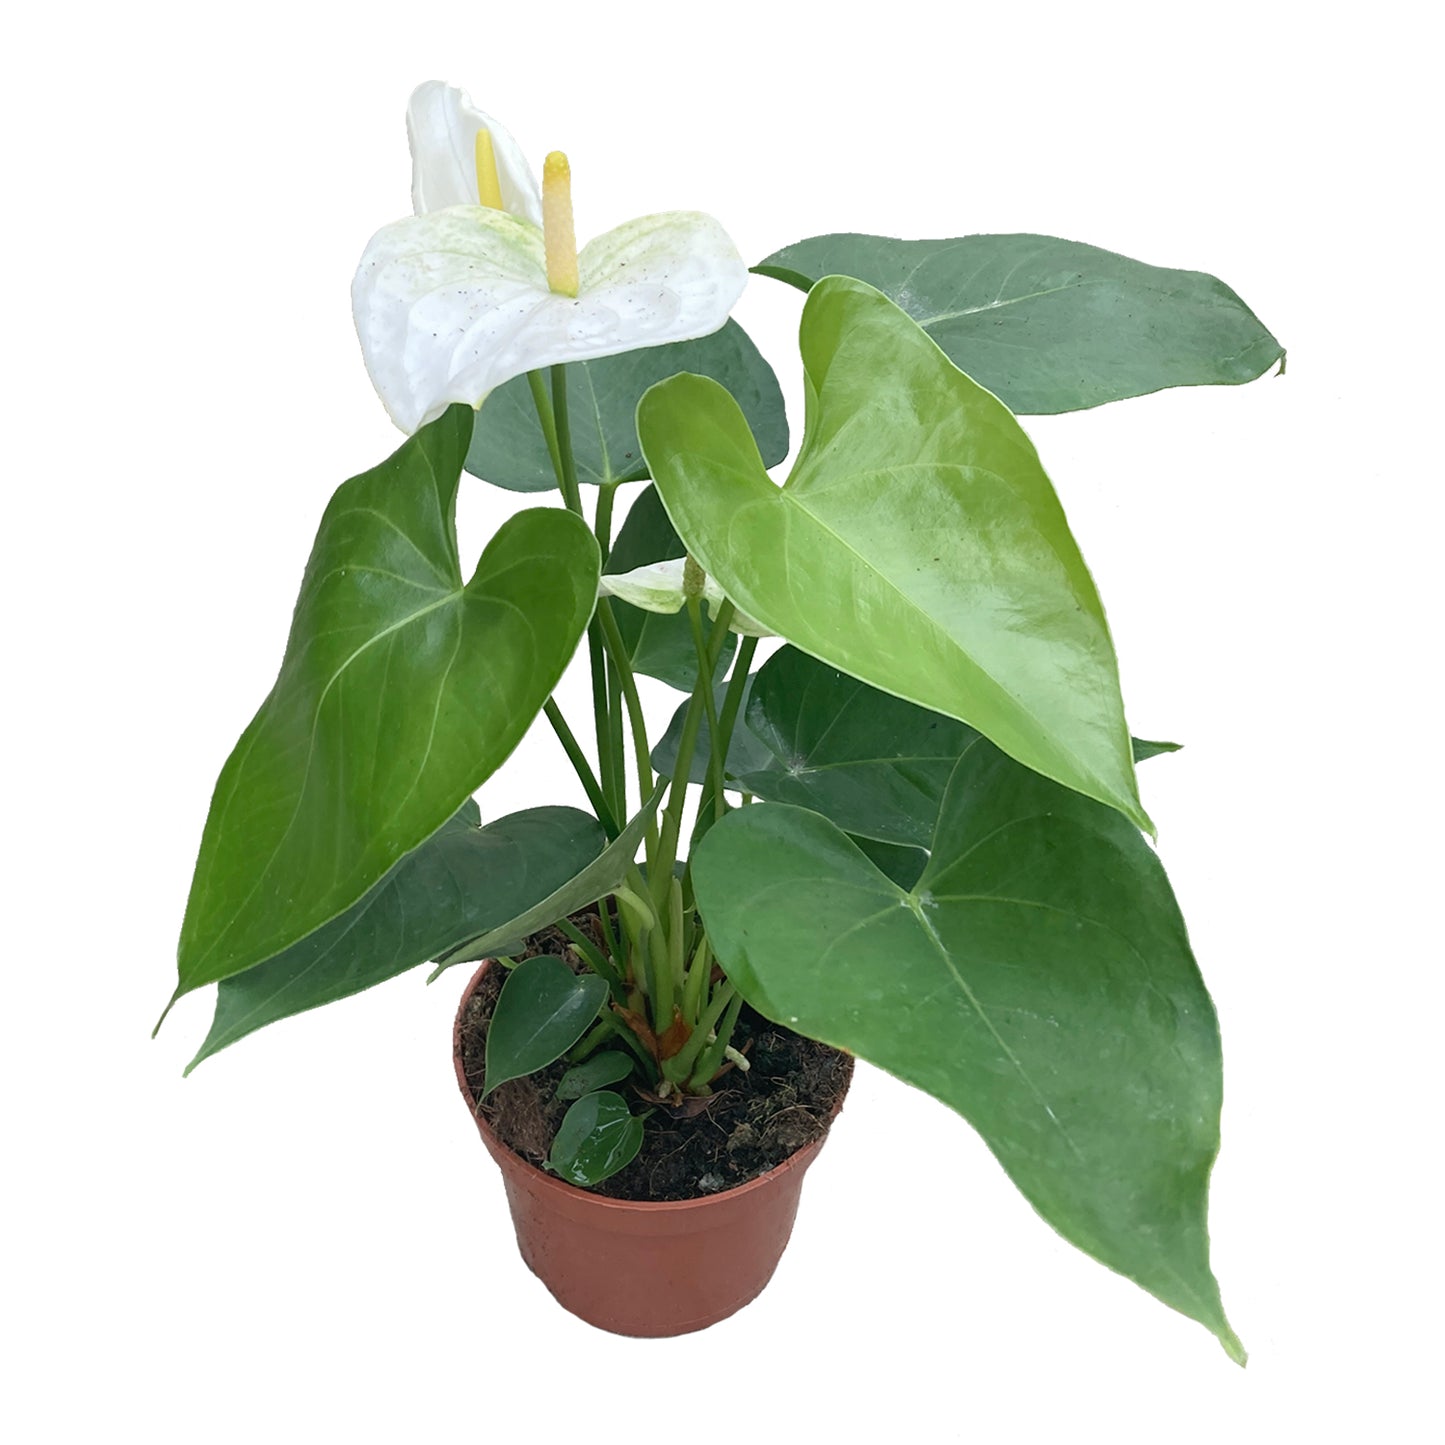 Anthurium white